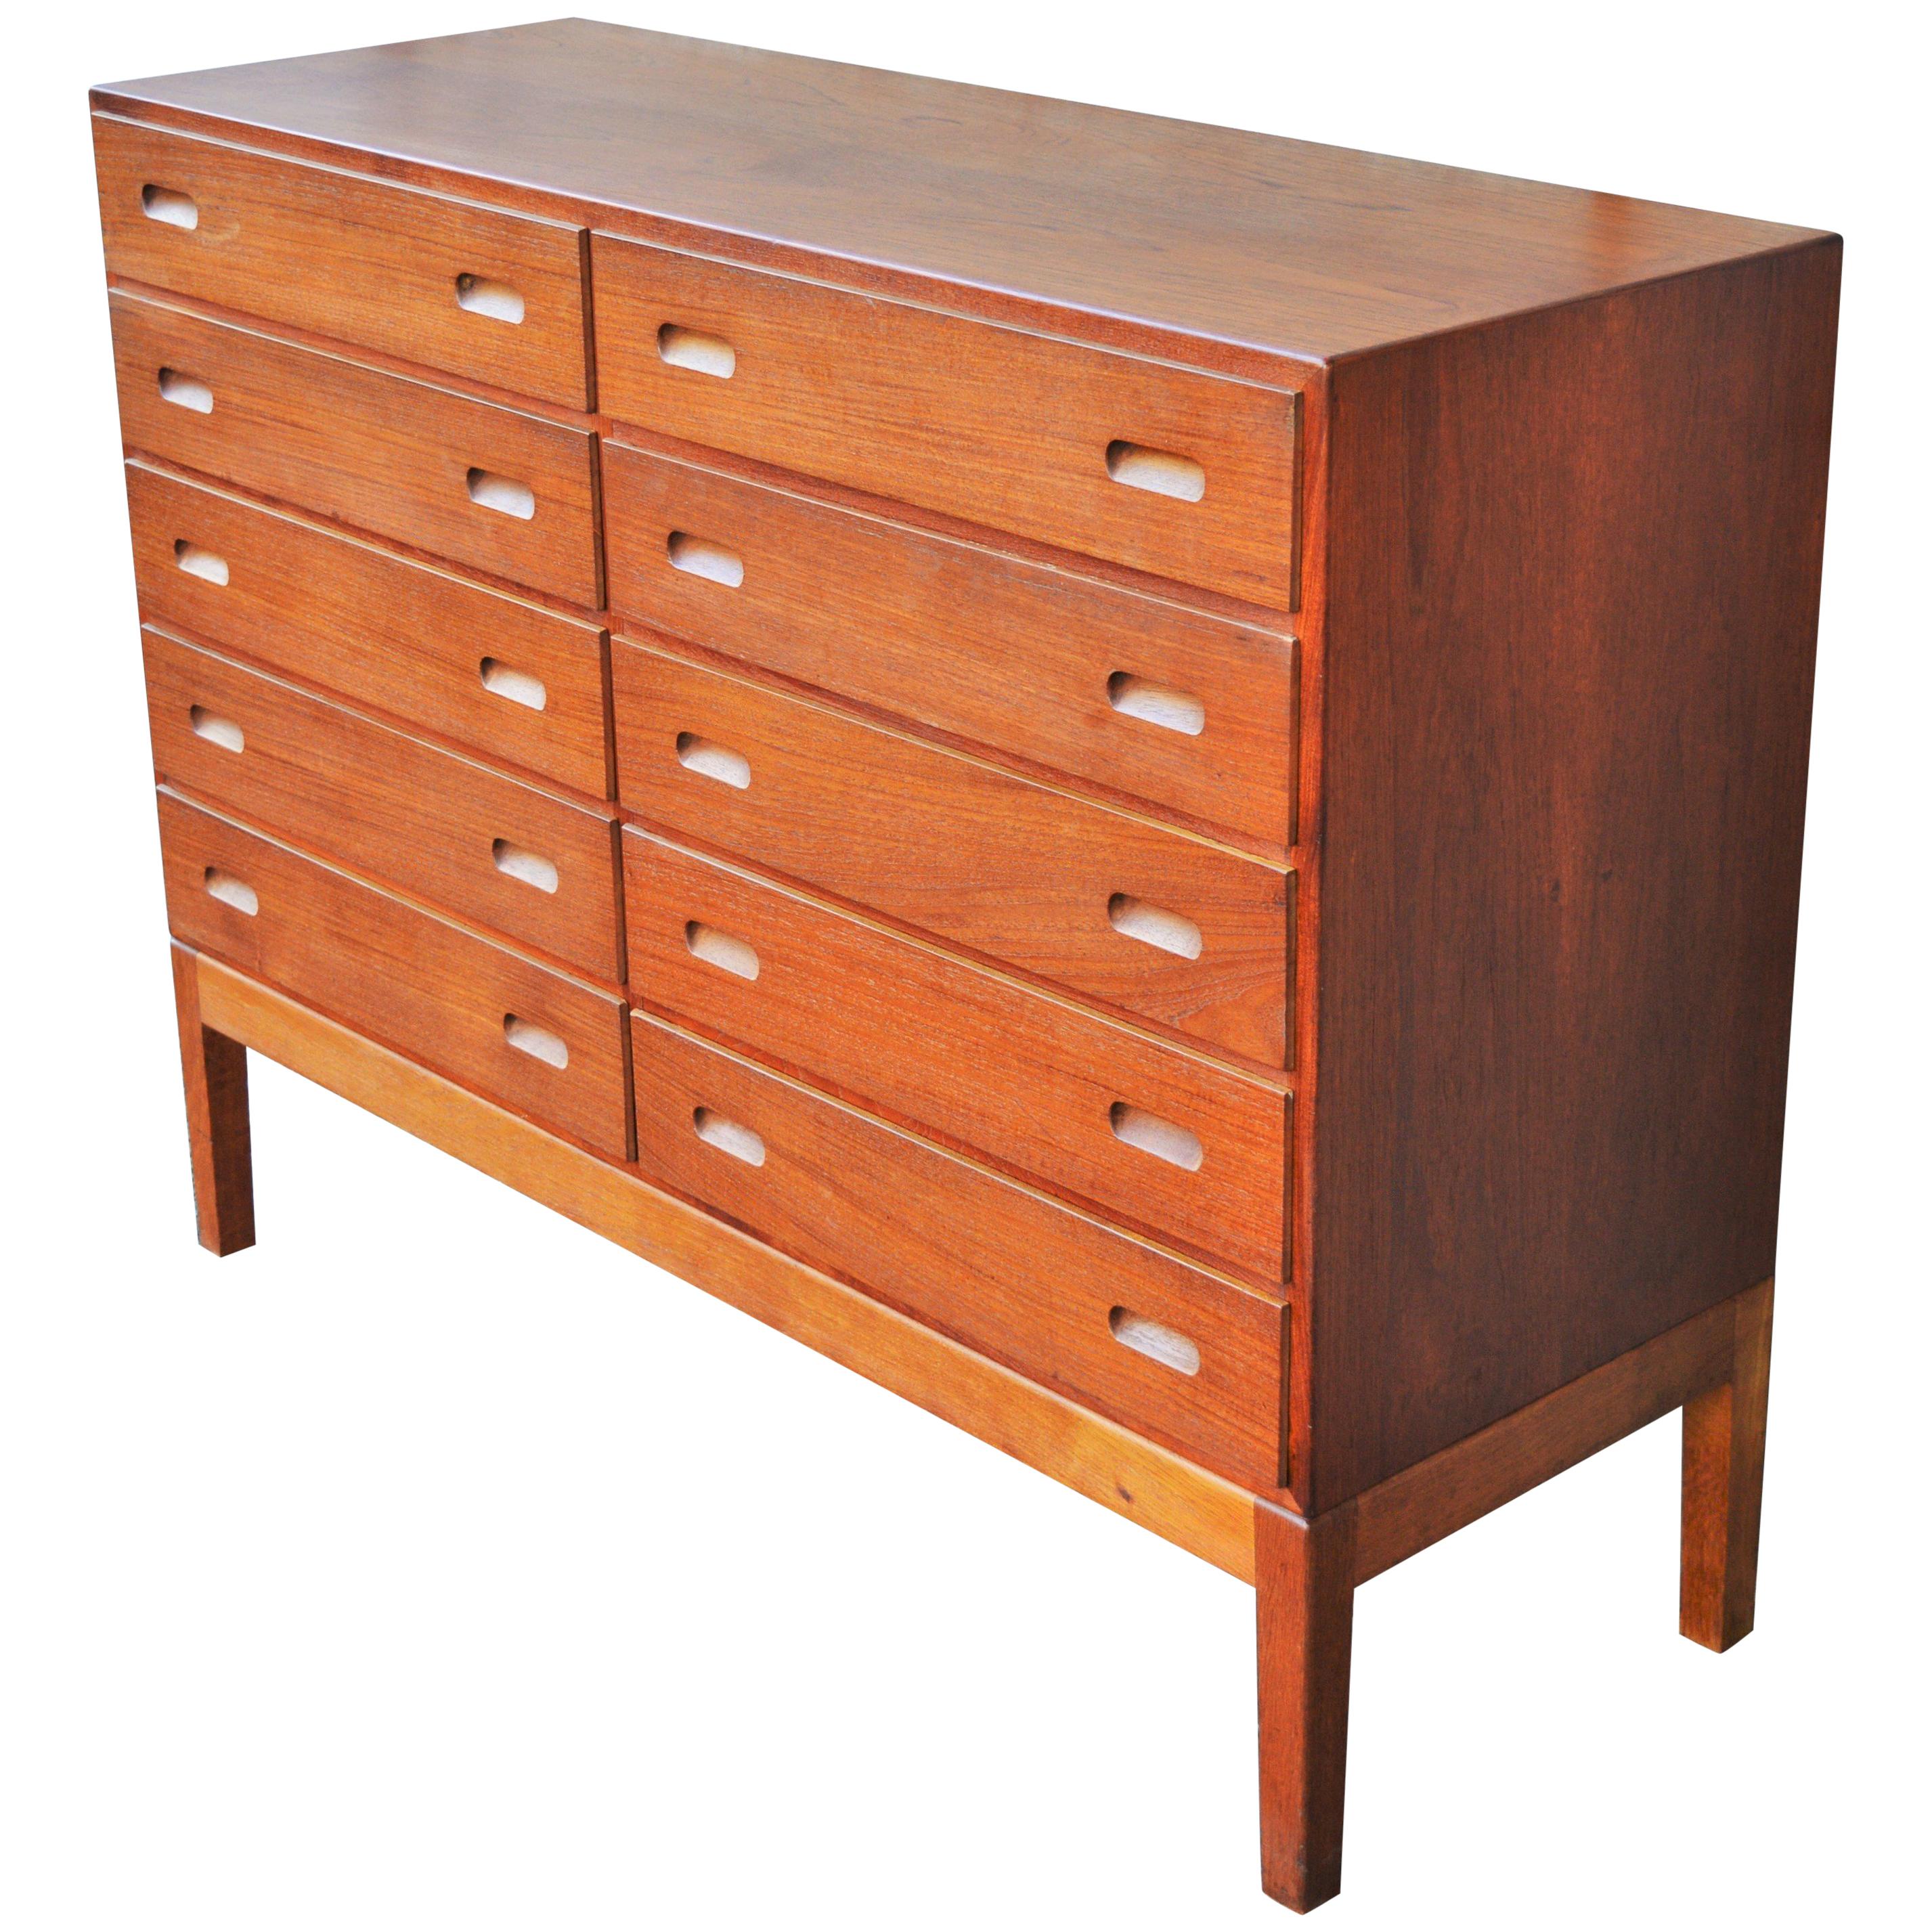 Rare Teak & Oak Borge Mogensen Quality 10-Drawer Dresser with Pedestal Base For Sale